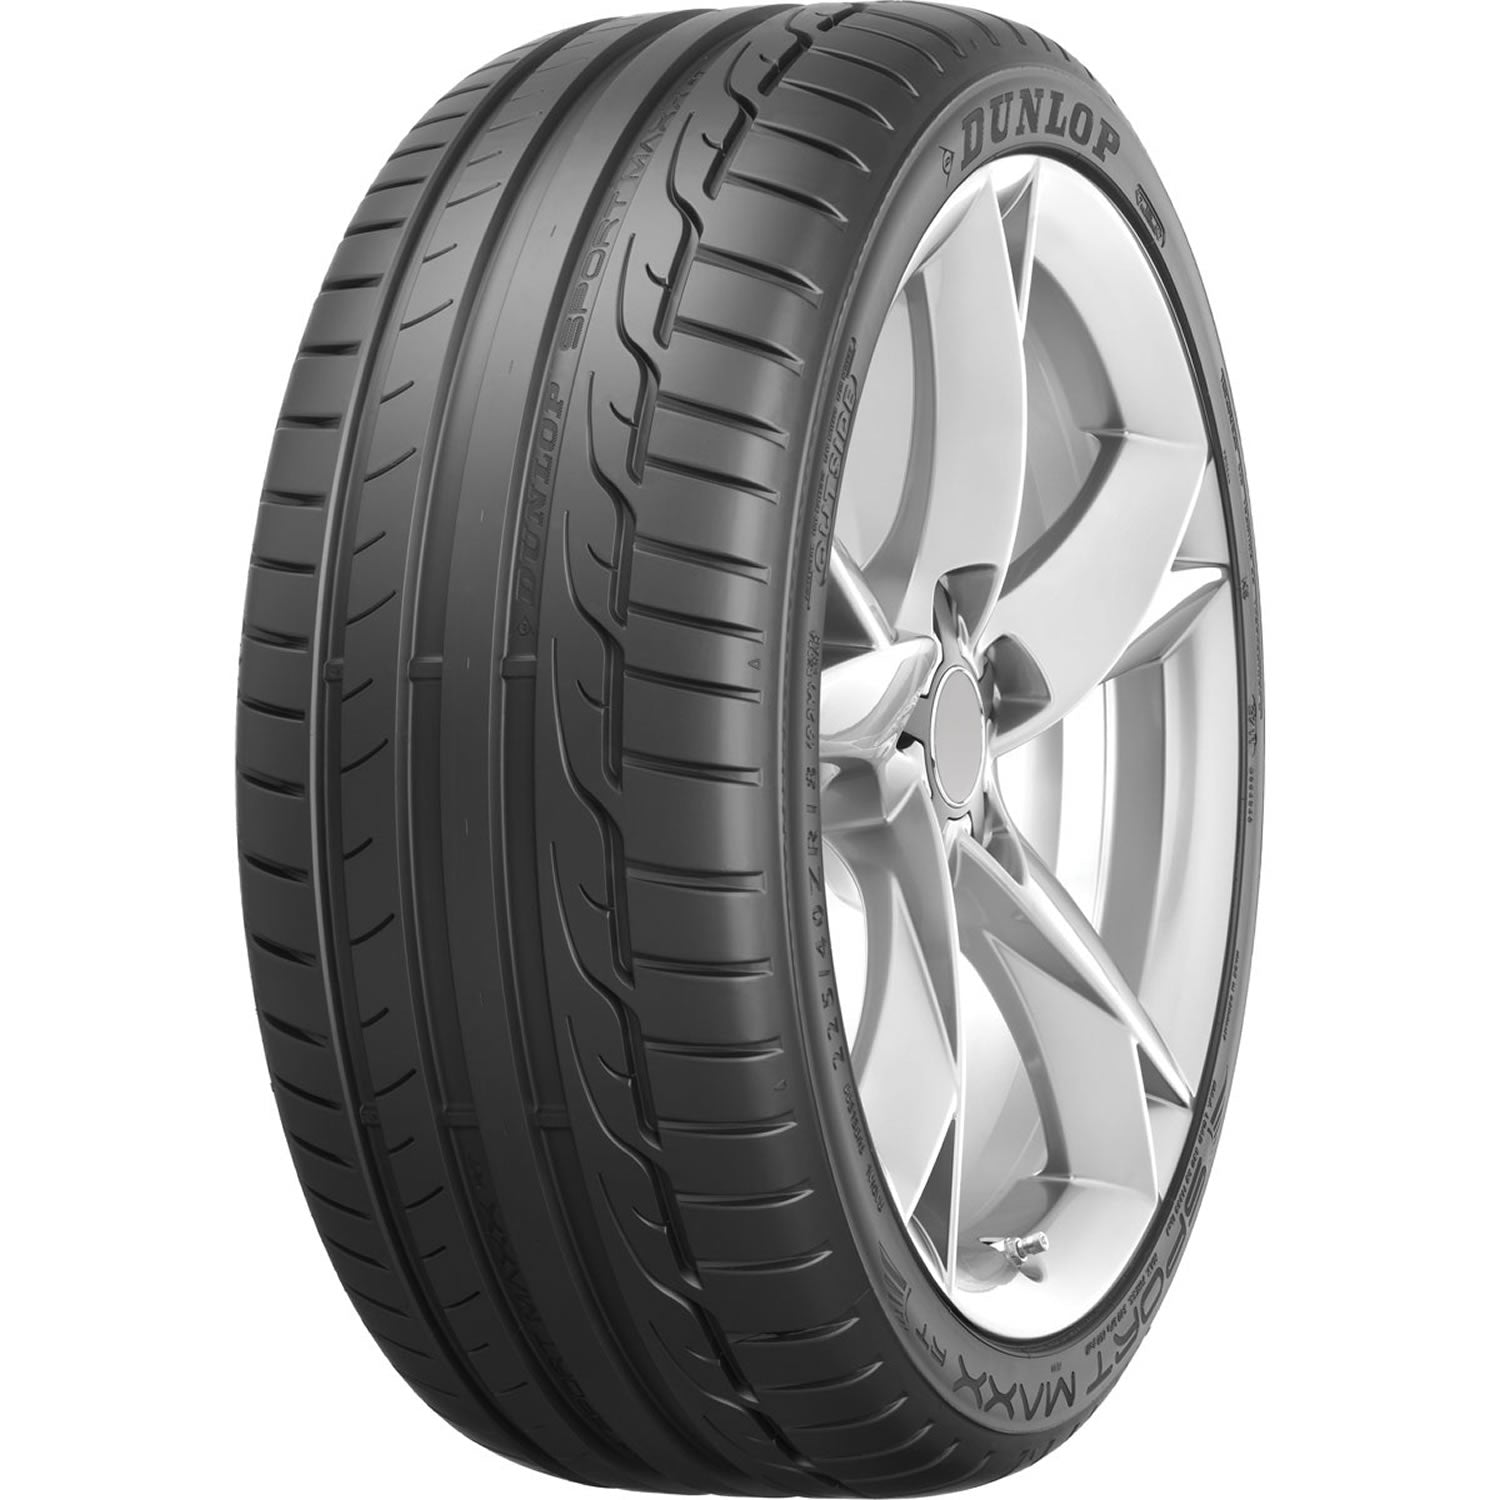 DUNLOP SPORT MAXX RT 245/35ZR19 (25.8X9.8R 19) Tires